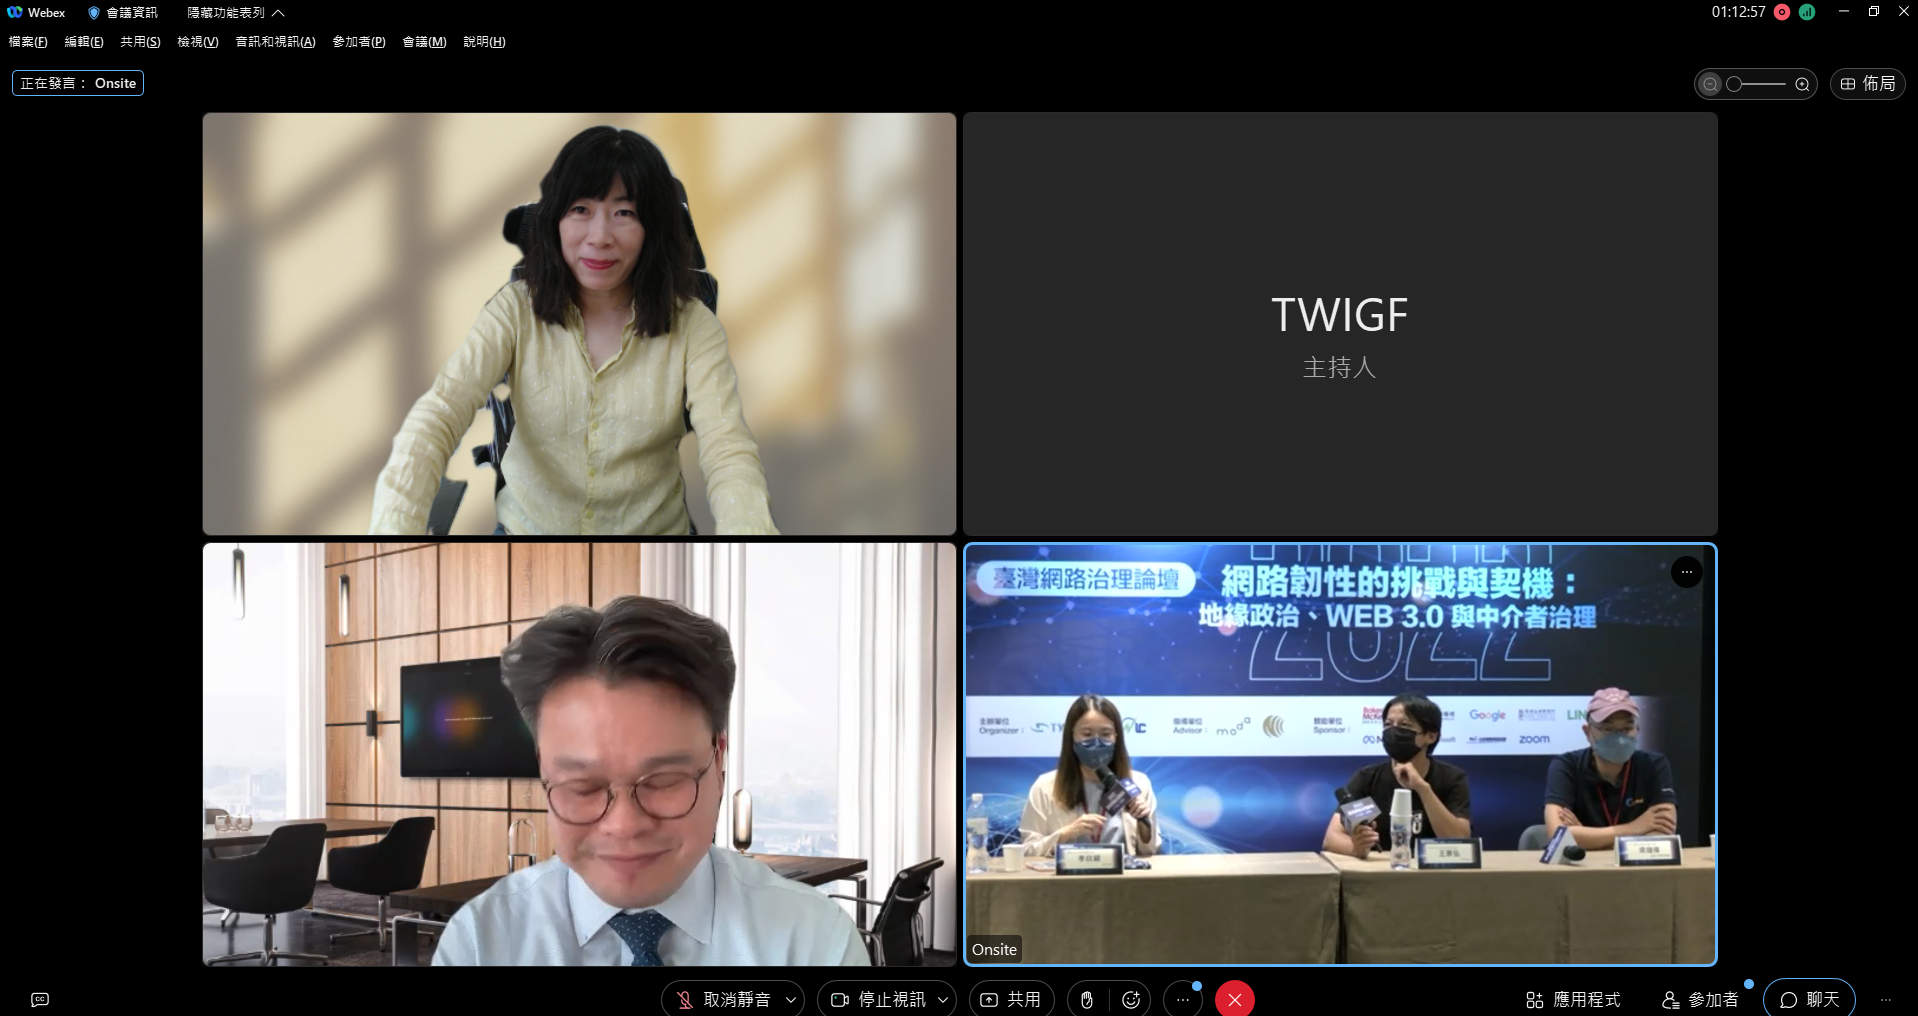 2022/09/28-台灣網路治理論壇(TWIGF)談資料跨境傳輸、資料主權與地緣政治的挑戰